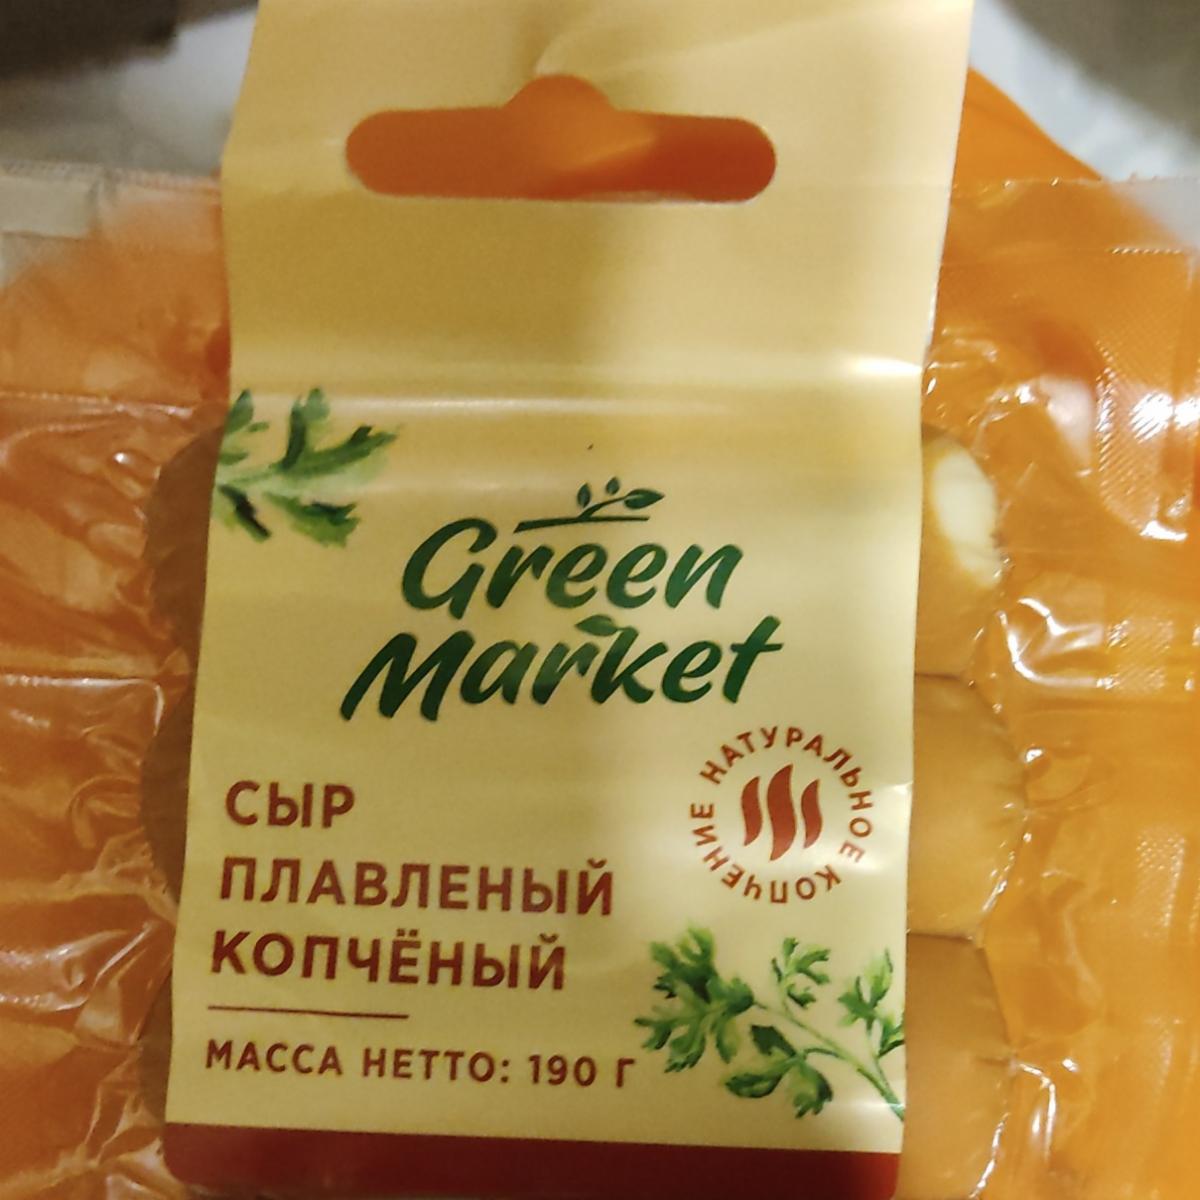 Фото - сыр плавленый копченый Green Market